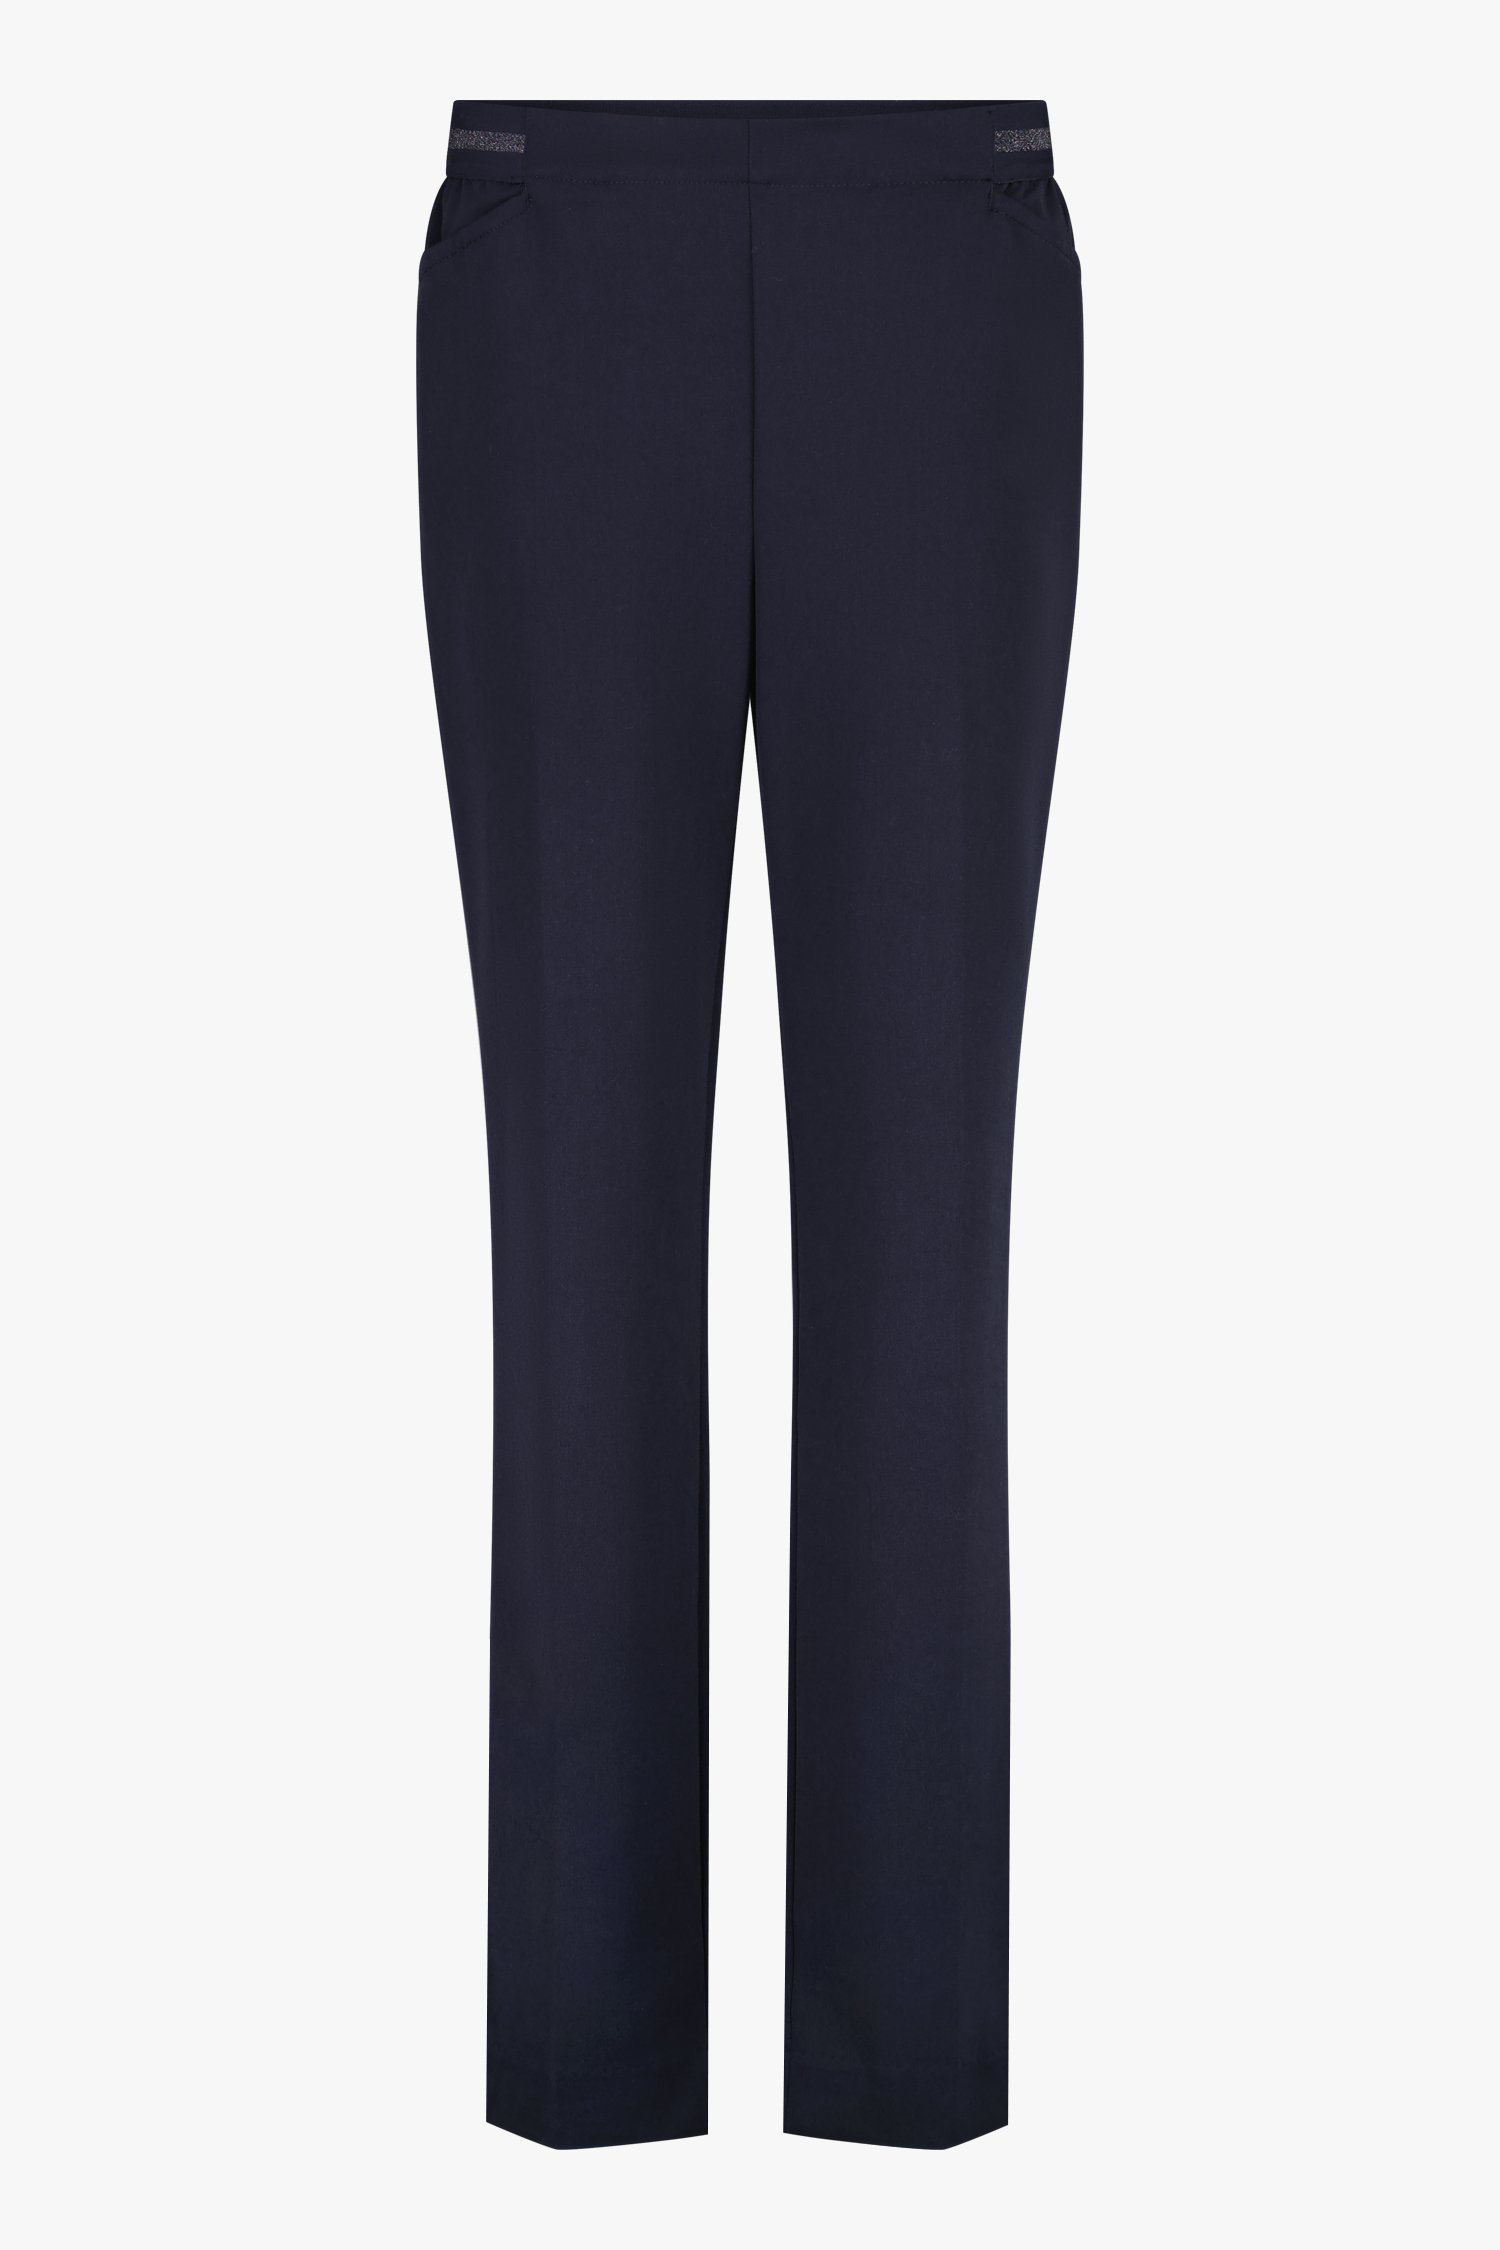 Donkerblauwe wijde broek met elastische tailleband van Claude Arielle voor Dames